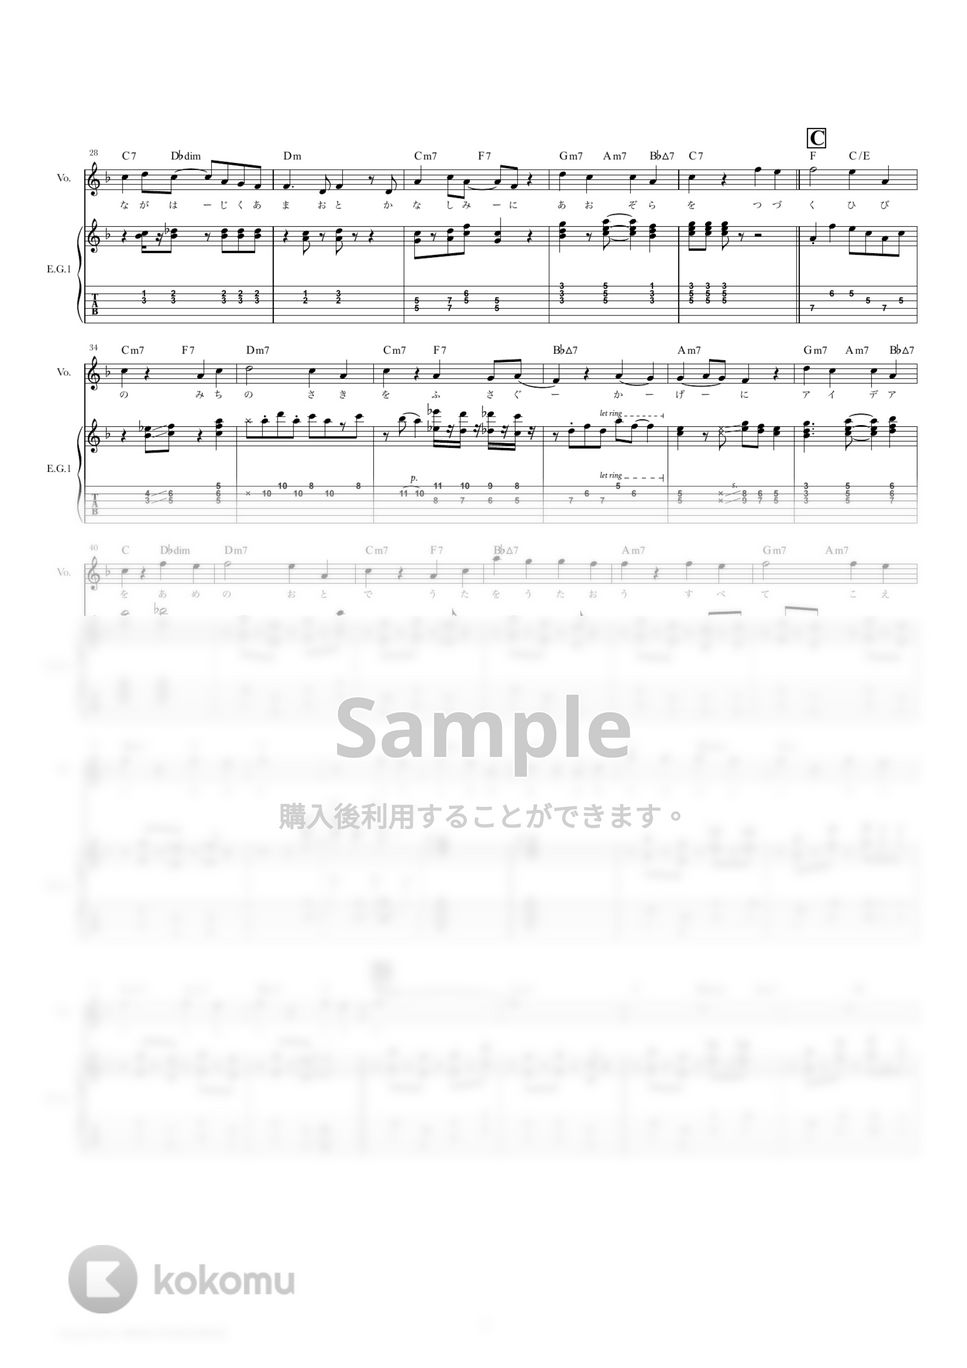 星野　源 - アイデア (ギタースコア・歌詞・コード付き) by TRIAD GUITAR SCHOOL